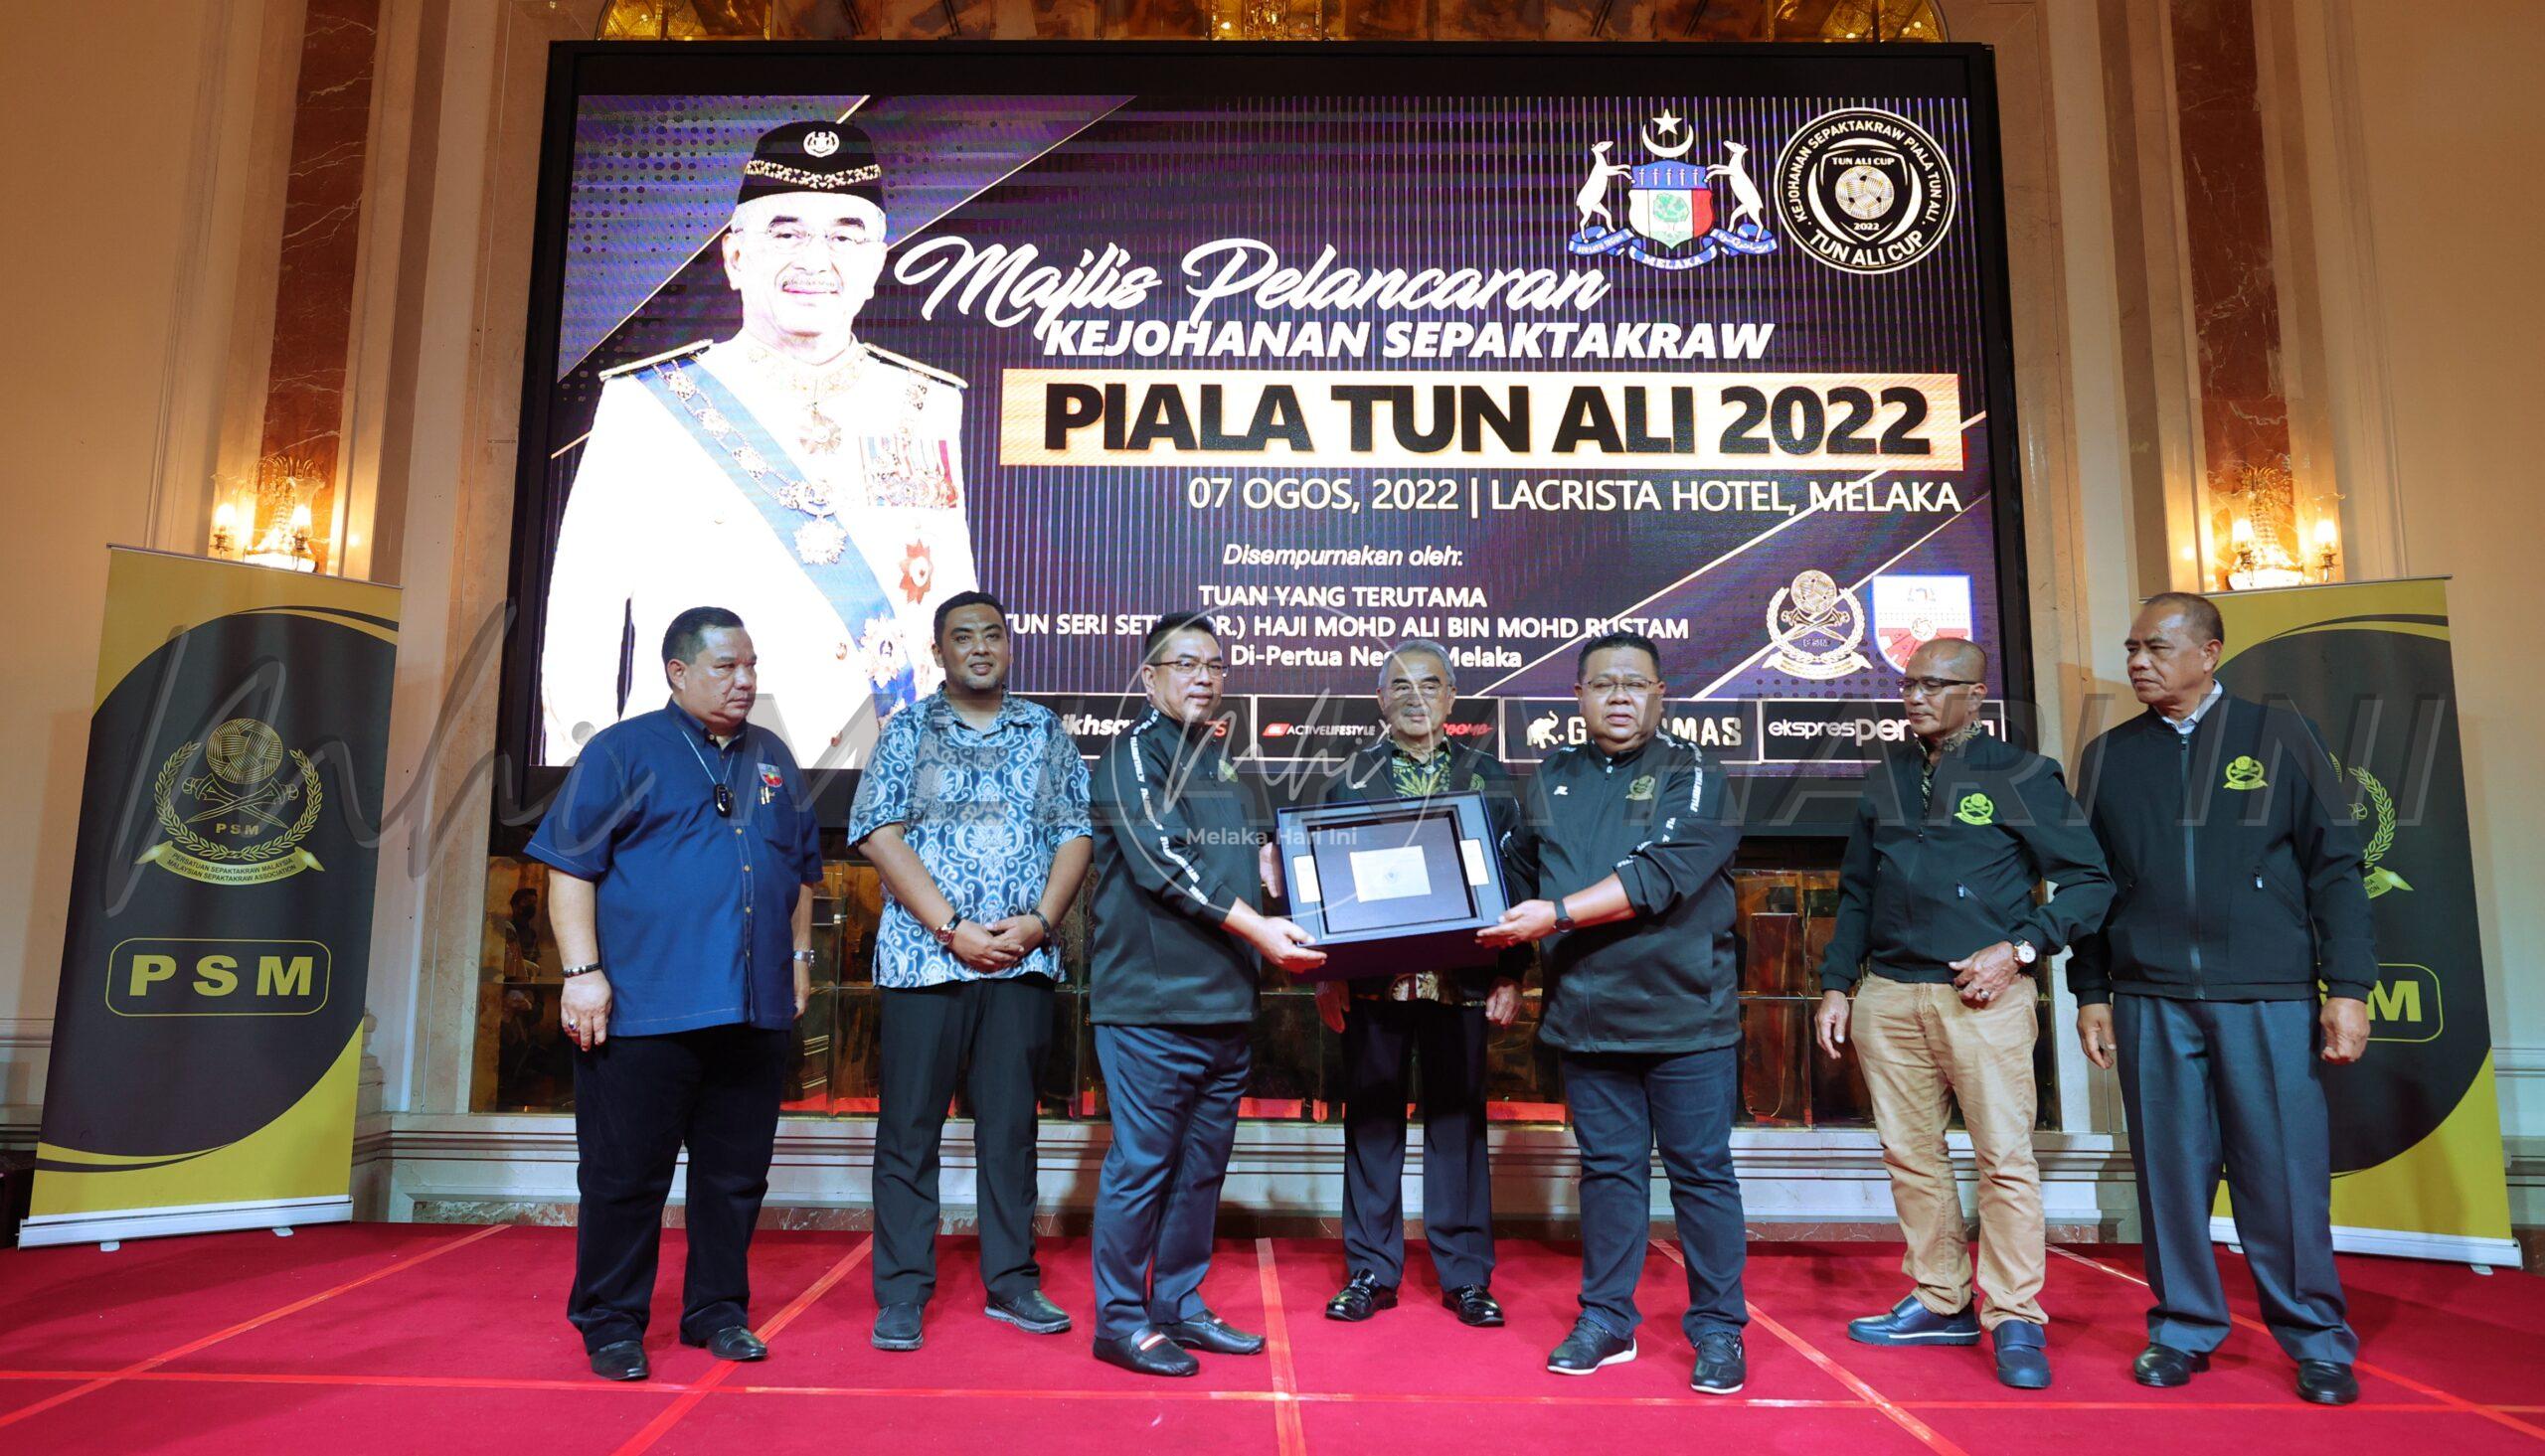 Piala Tun Ali 2022 medan cari pelapis sepak takraw negara